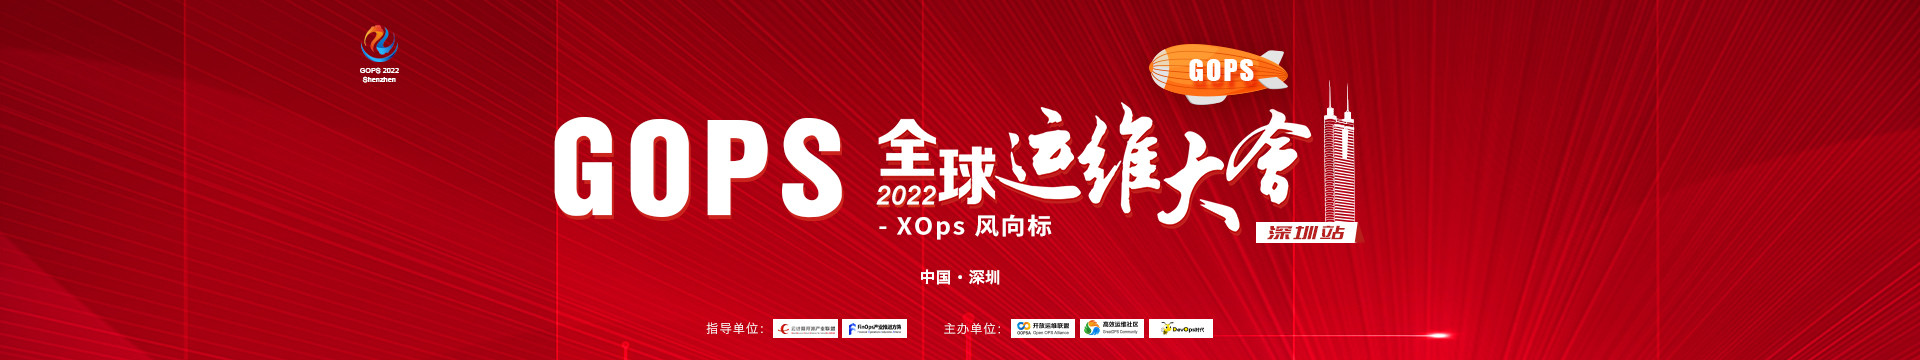 2022GOPS全球運維大會深圳站--XOps風向標